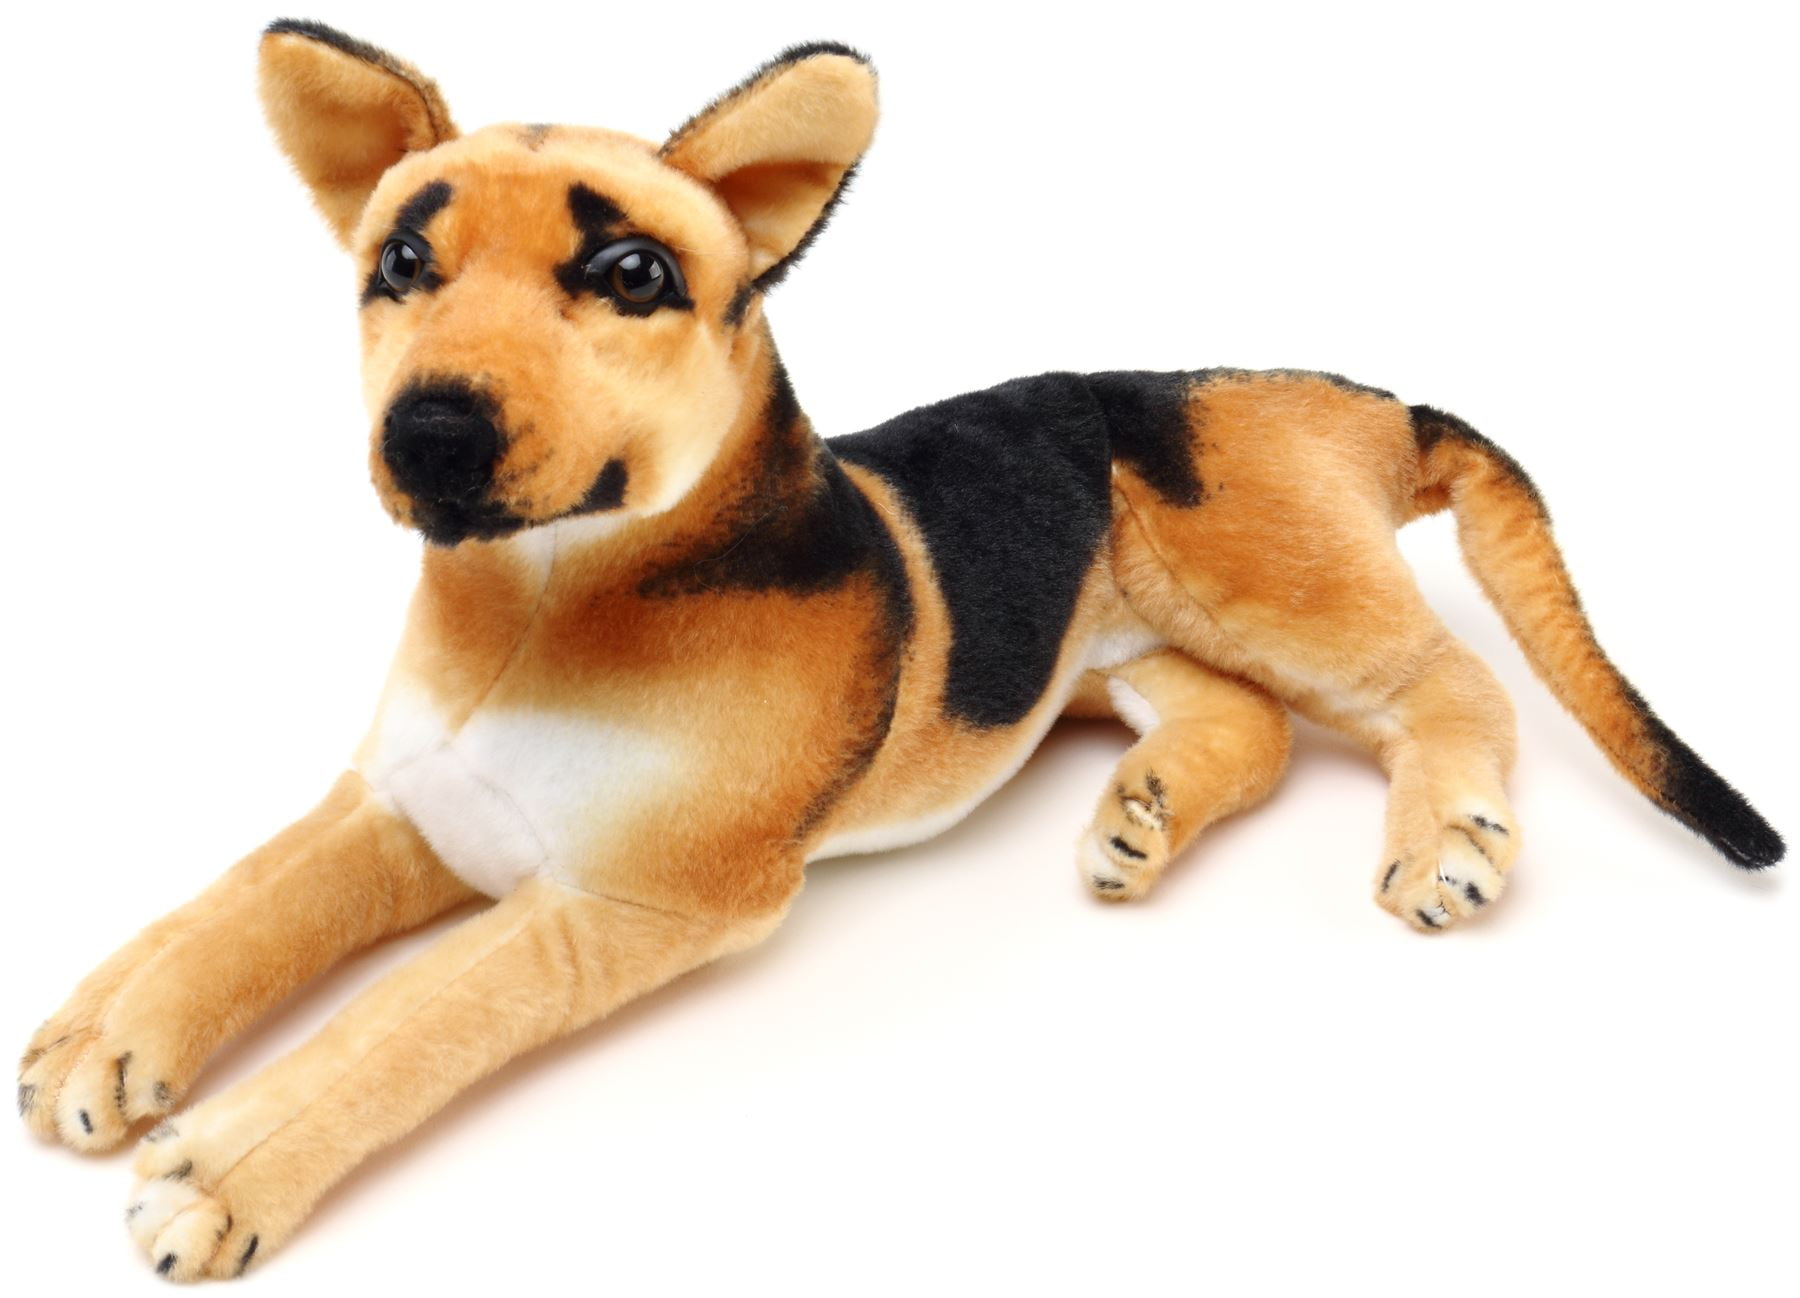 german shepherd dog stuffed animal